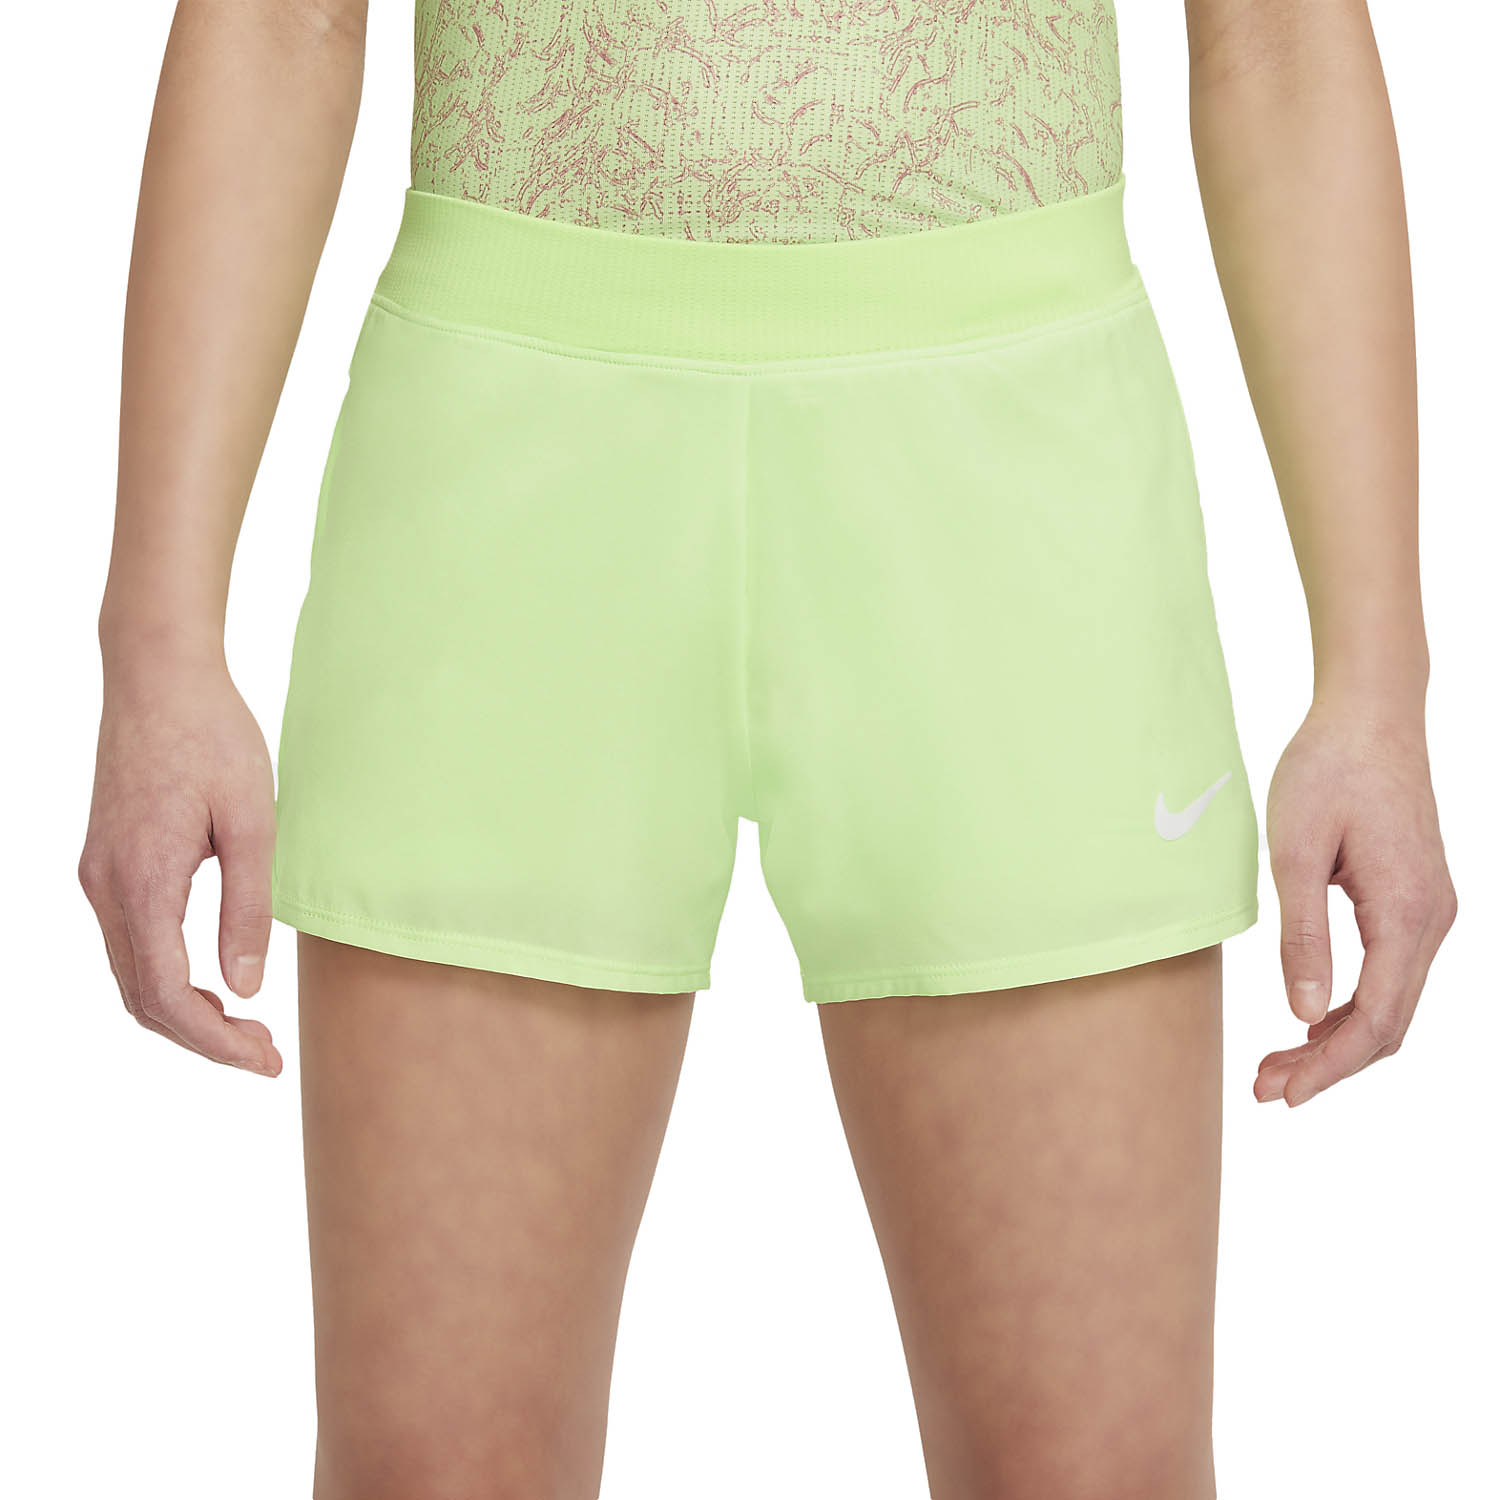 Шорты Nike Court Dri-Fit Victory. Lime шорты 8140 203 325. Шорты для тенниса женские. Lime шорты розовые. Lime шорты